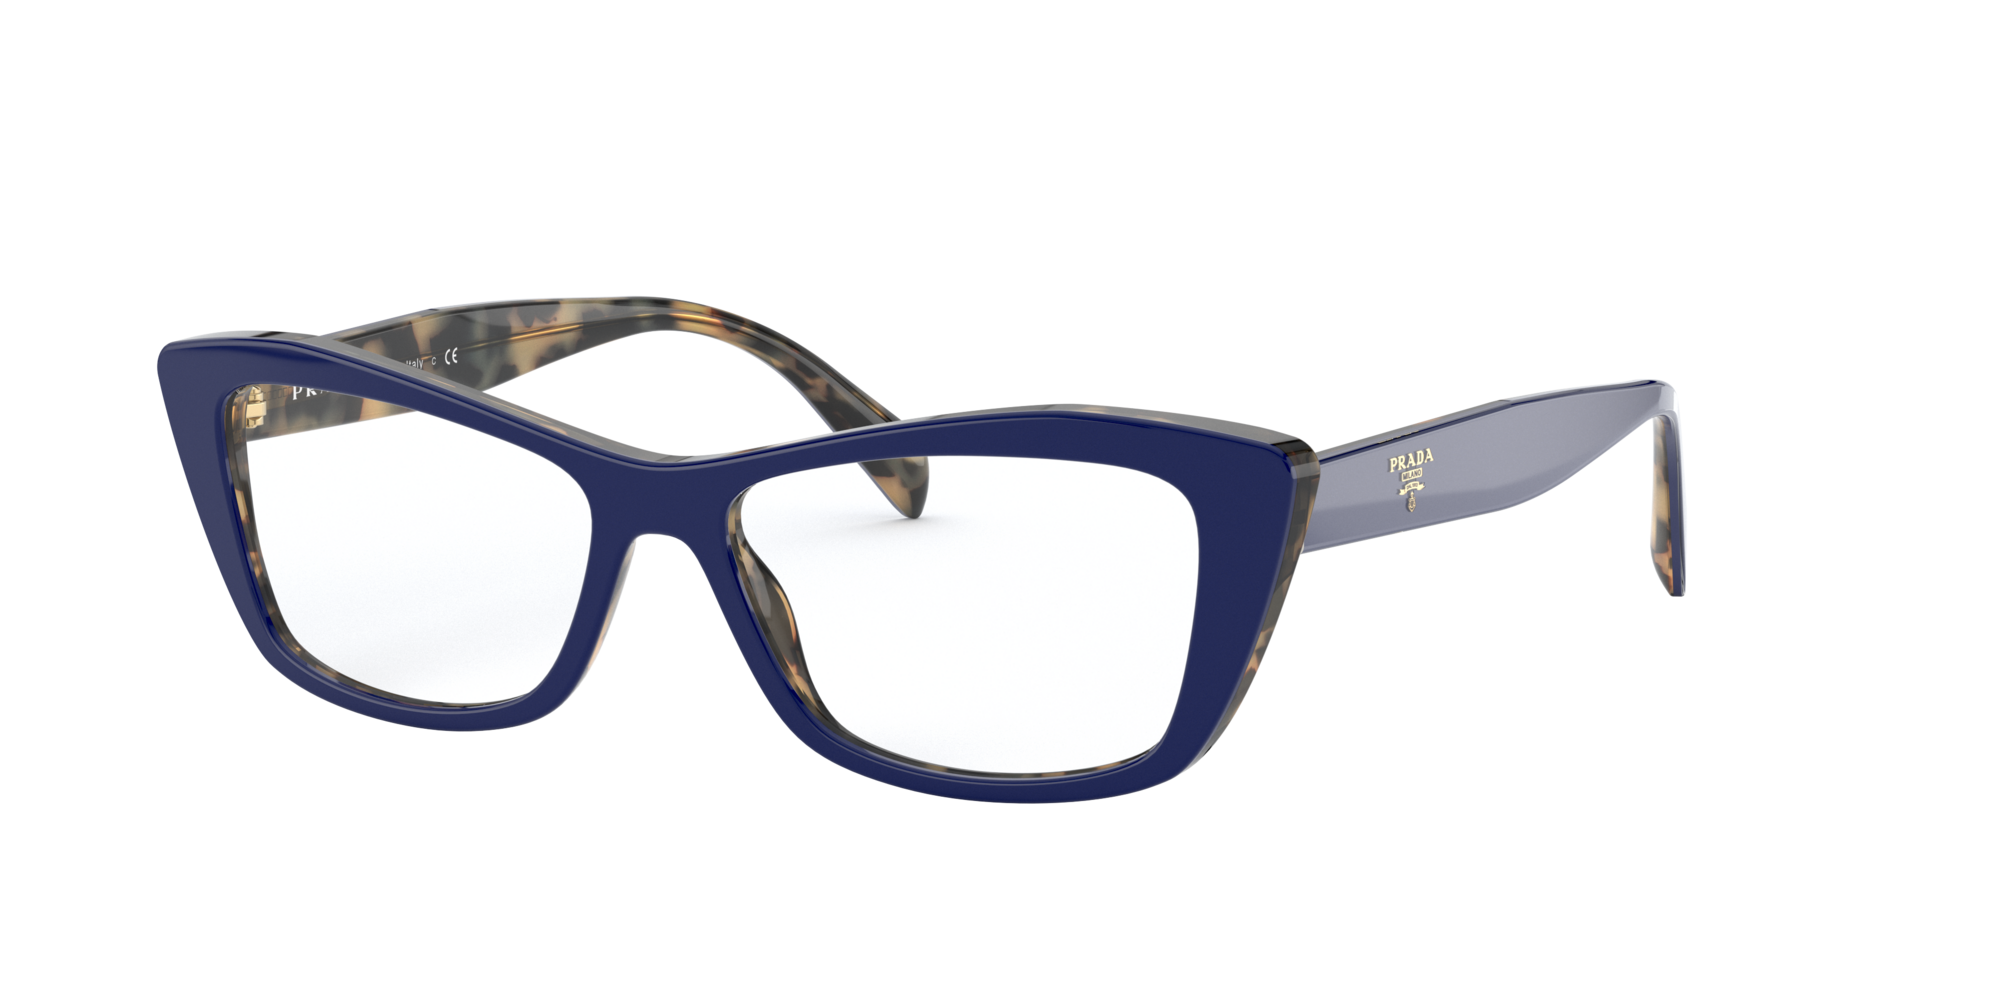 prada sunglasses lenscrafters